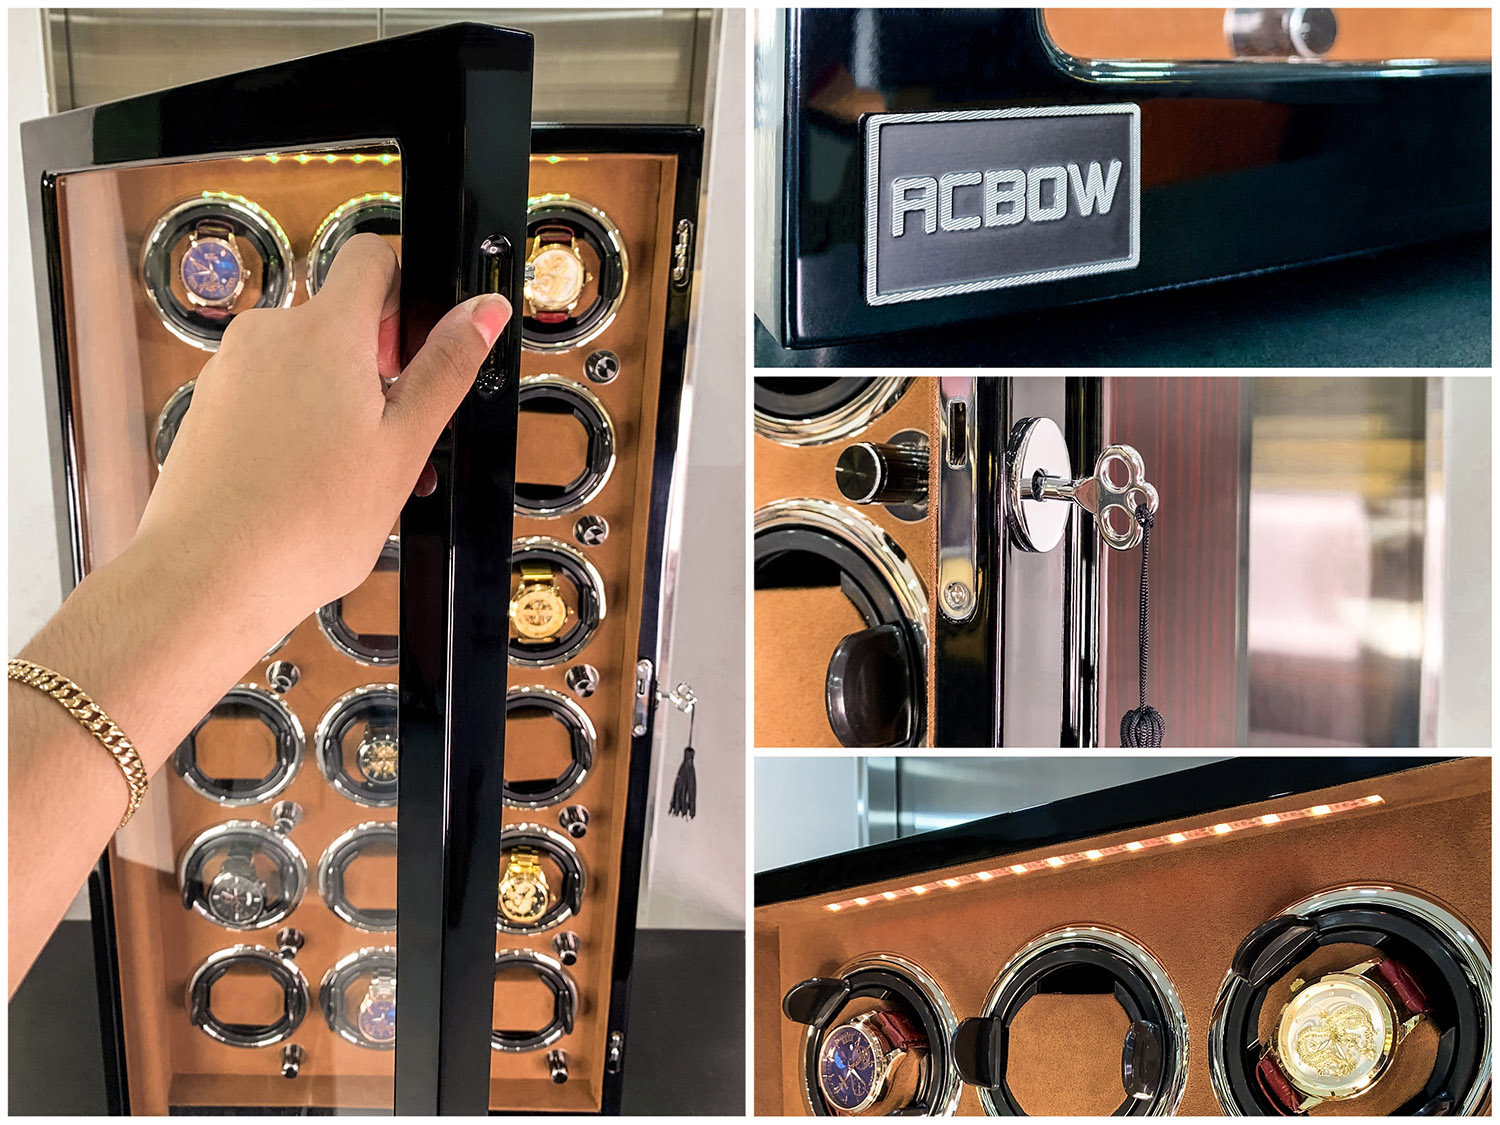 Tủ đồng hồ cơ ACBOW 18 ngăn xoay nội thất nhung nâu + đèn LED + có khóa cao cấp